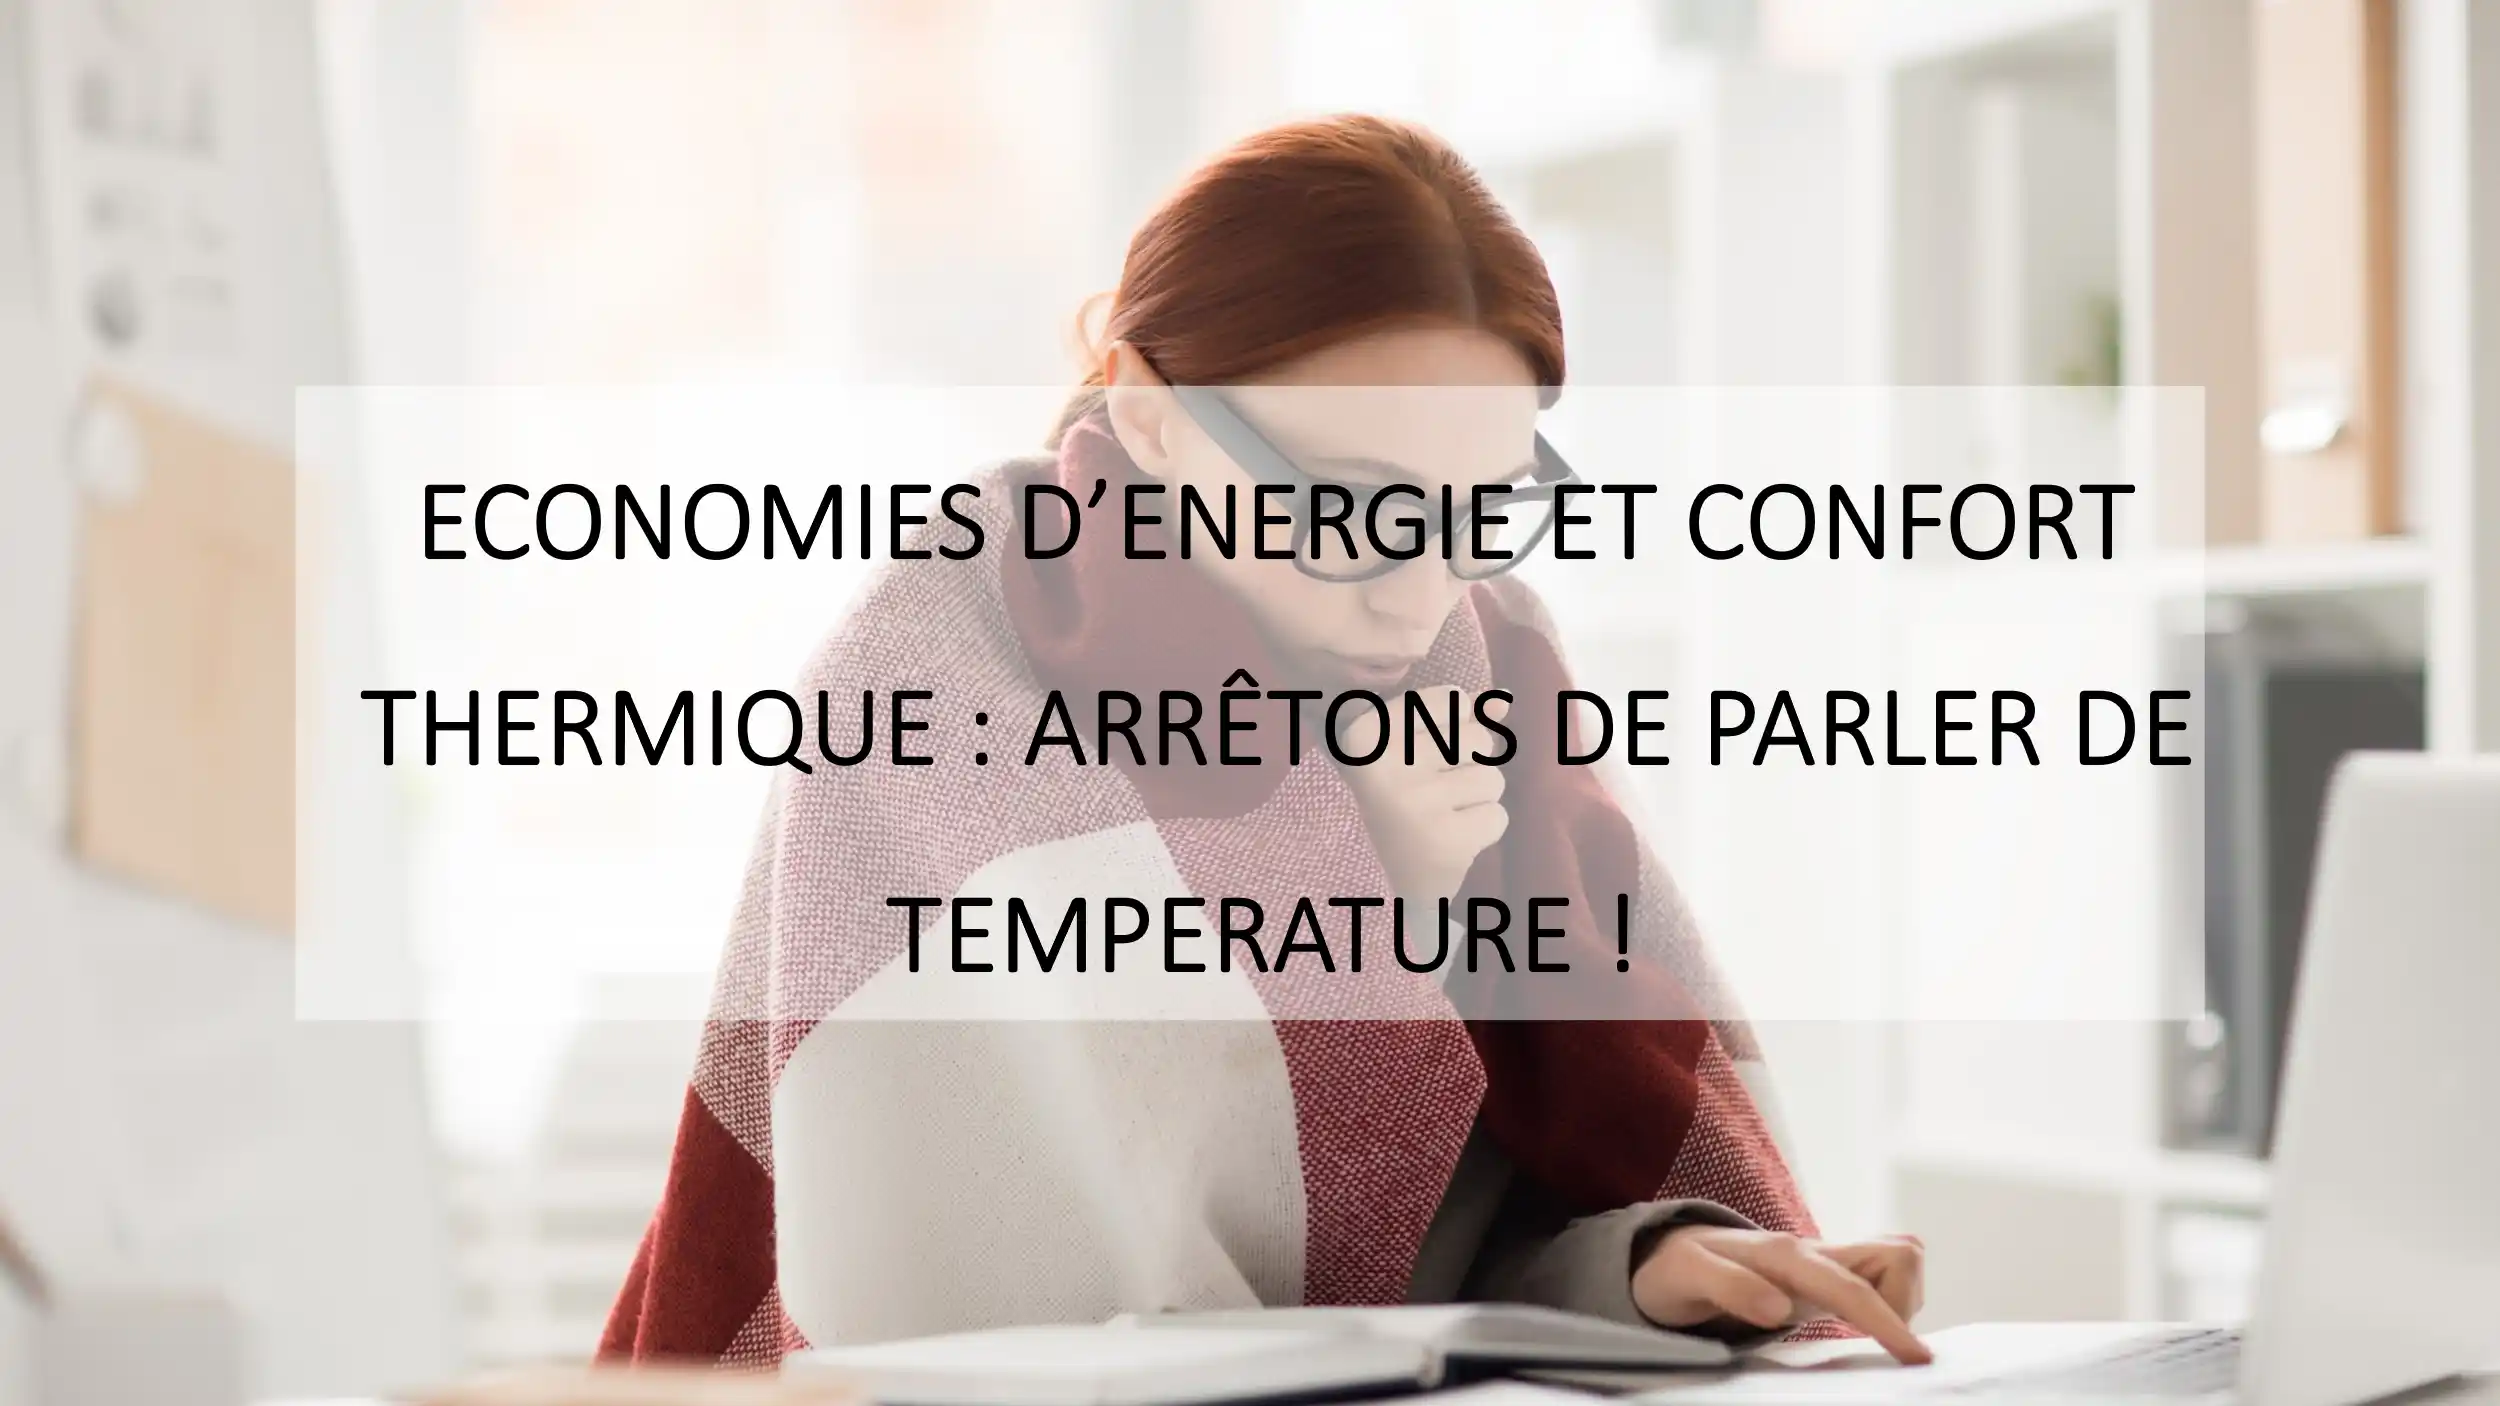 Economies d'énergie et confort thermique : Arrêtons de parler de température ! par L'Arbre Corail